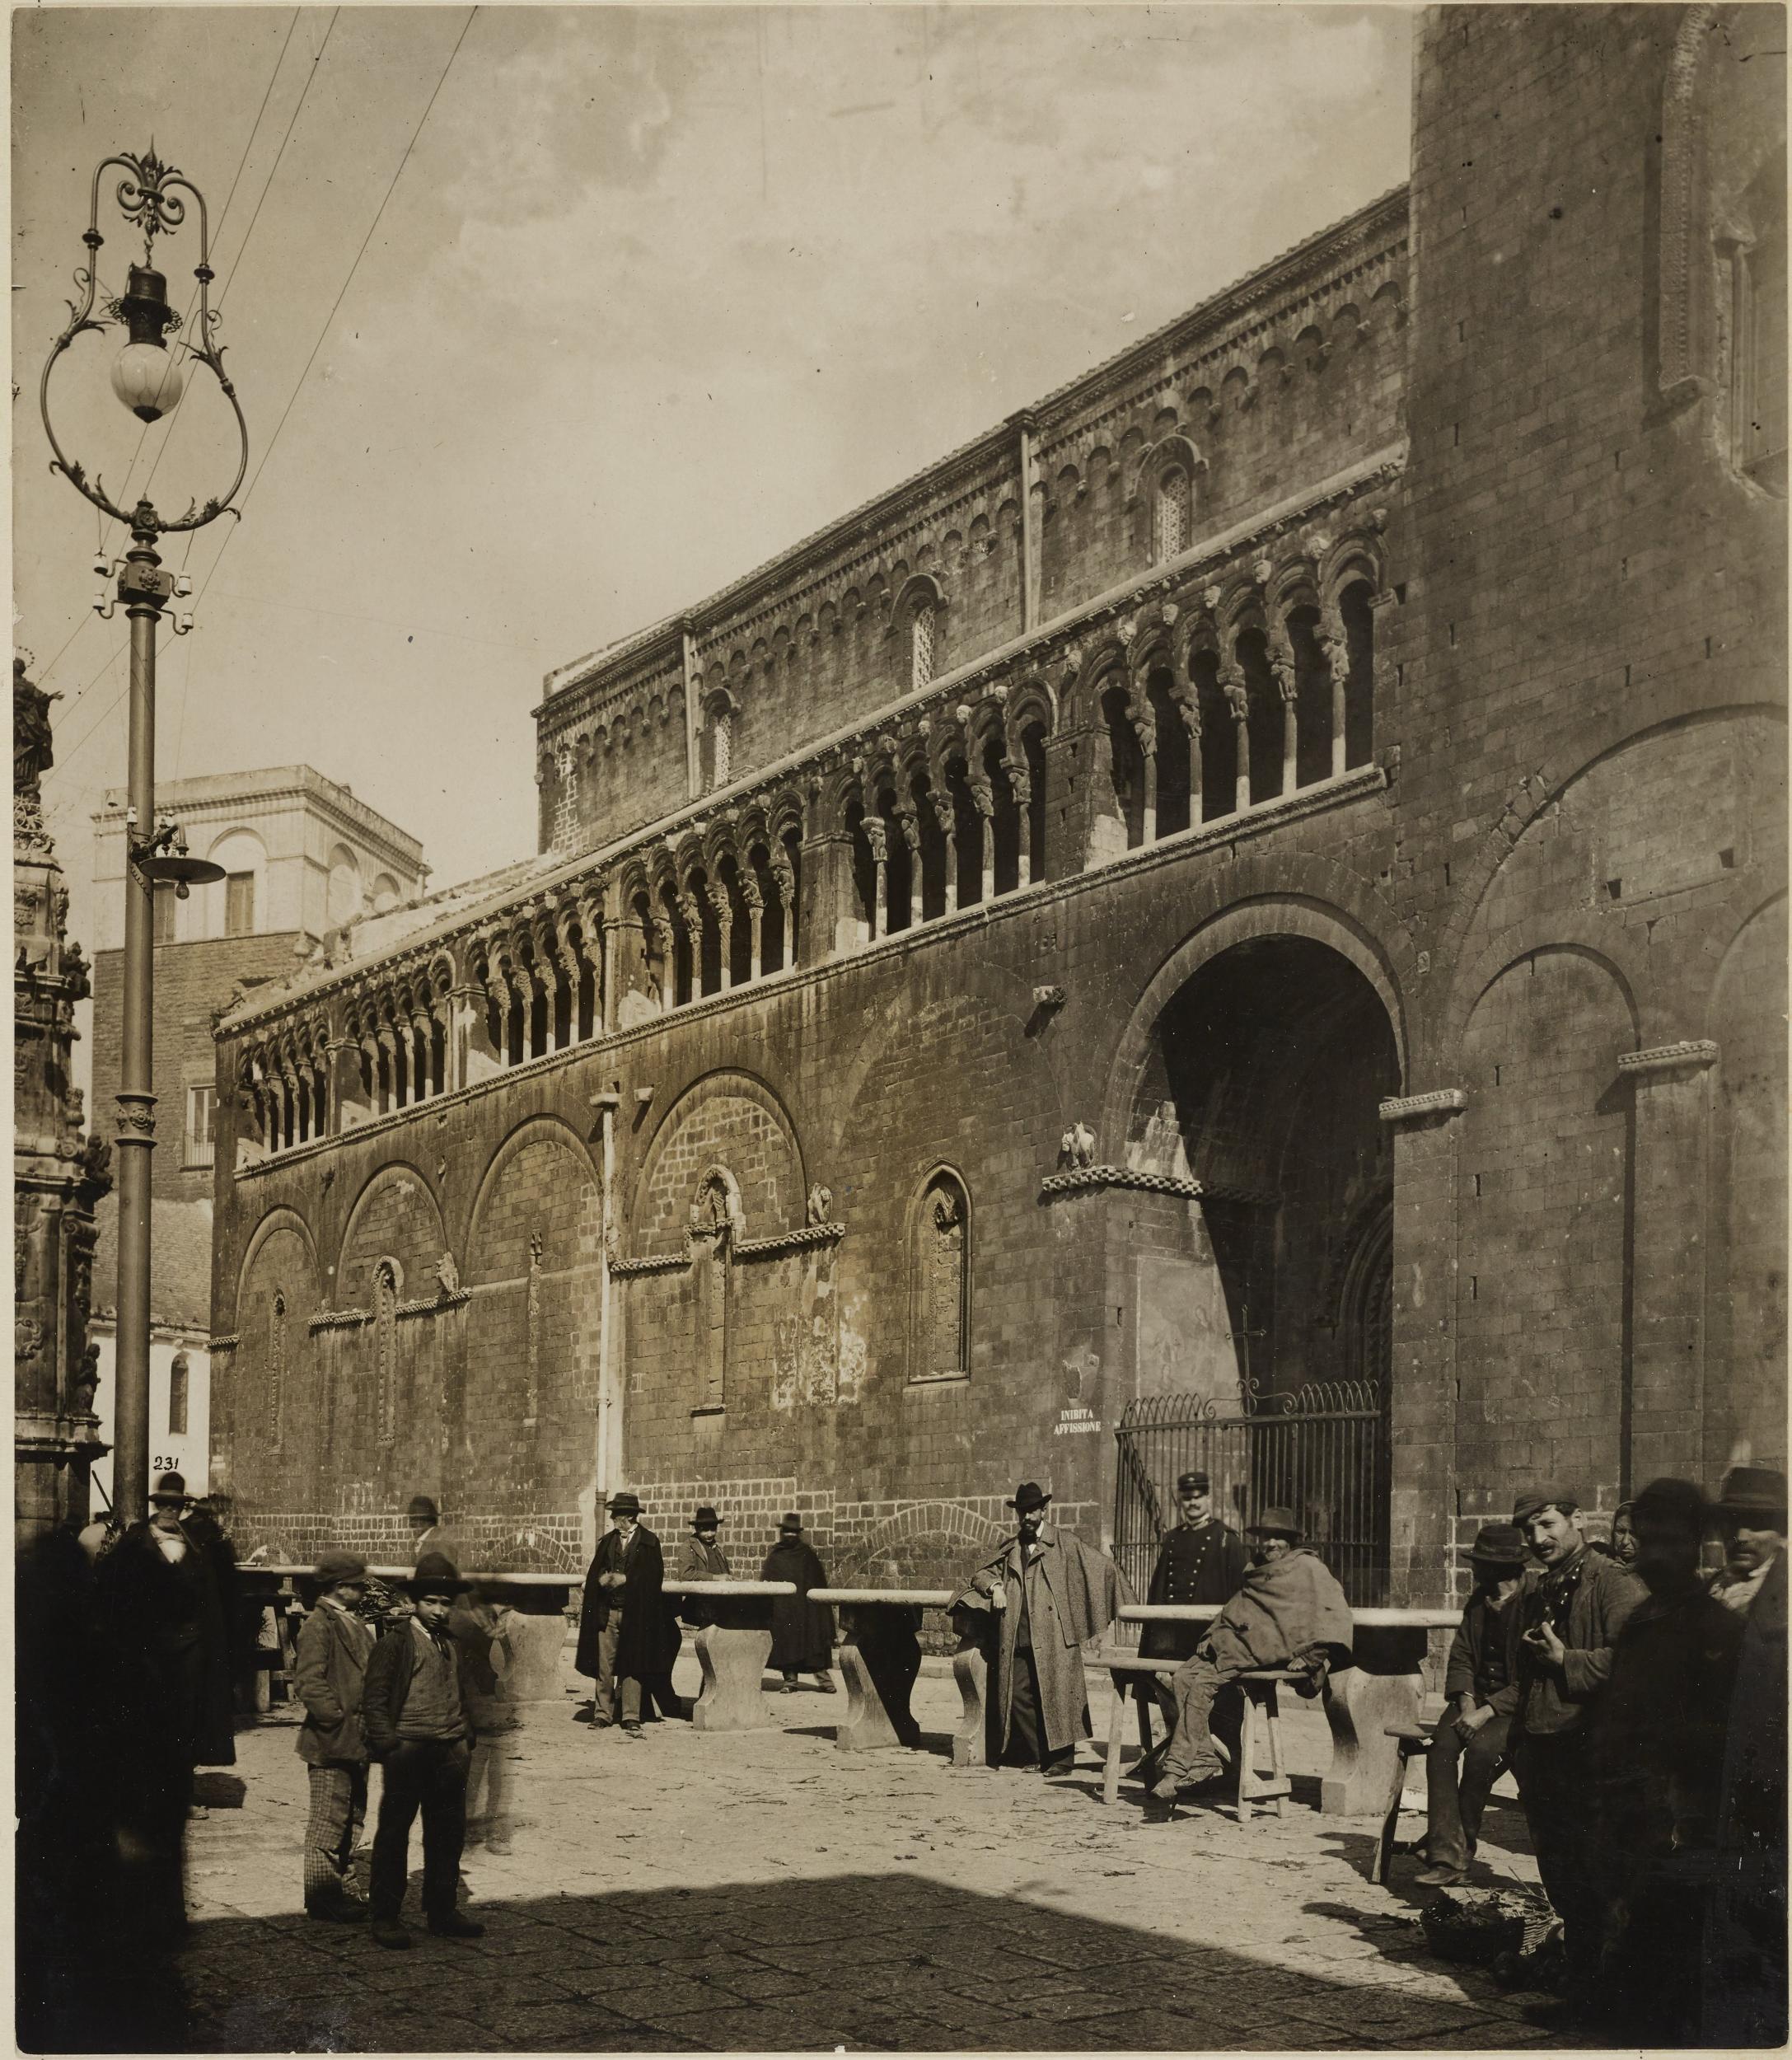 Fotografo non identificato, Bitonto - Cattedrale di S. Valentino, fianco destro, 1901-1925, gelatina ai sali d'argento/carta, MPI137818